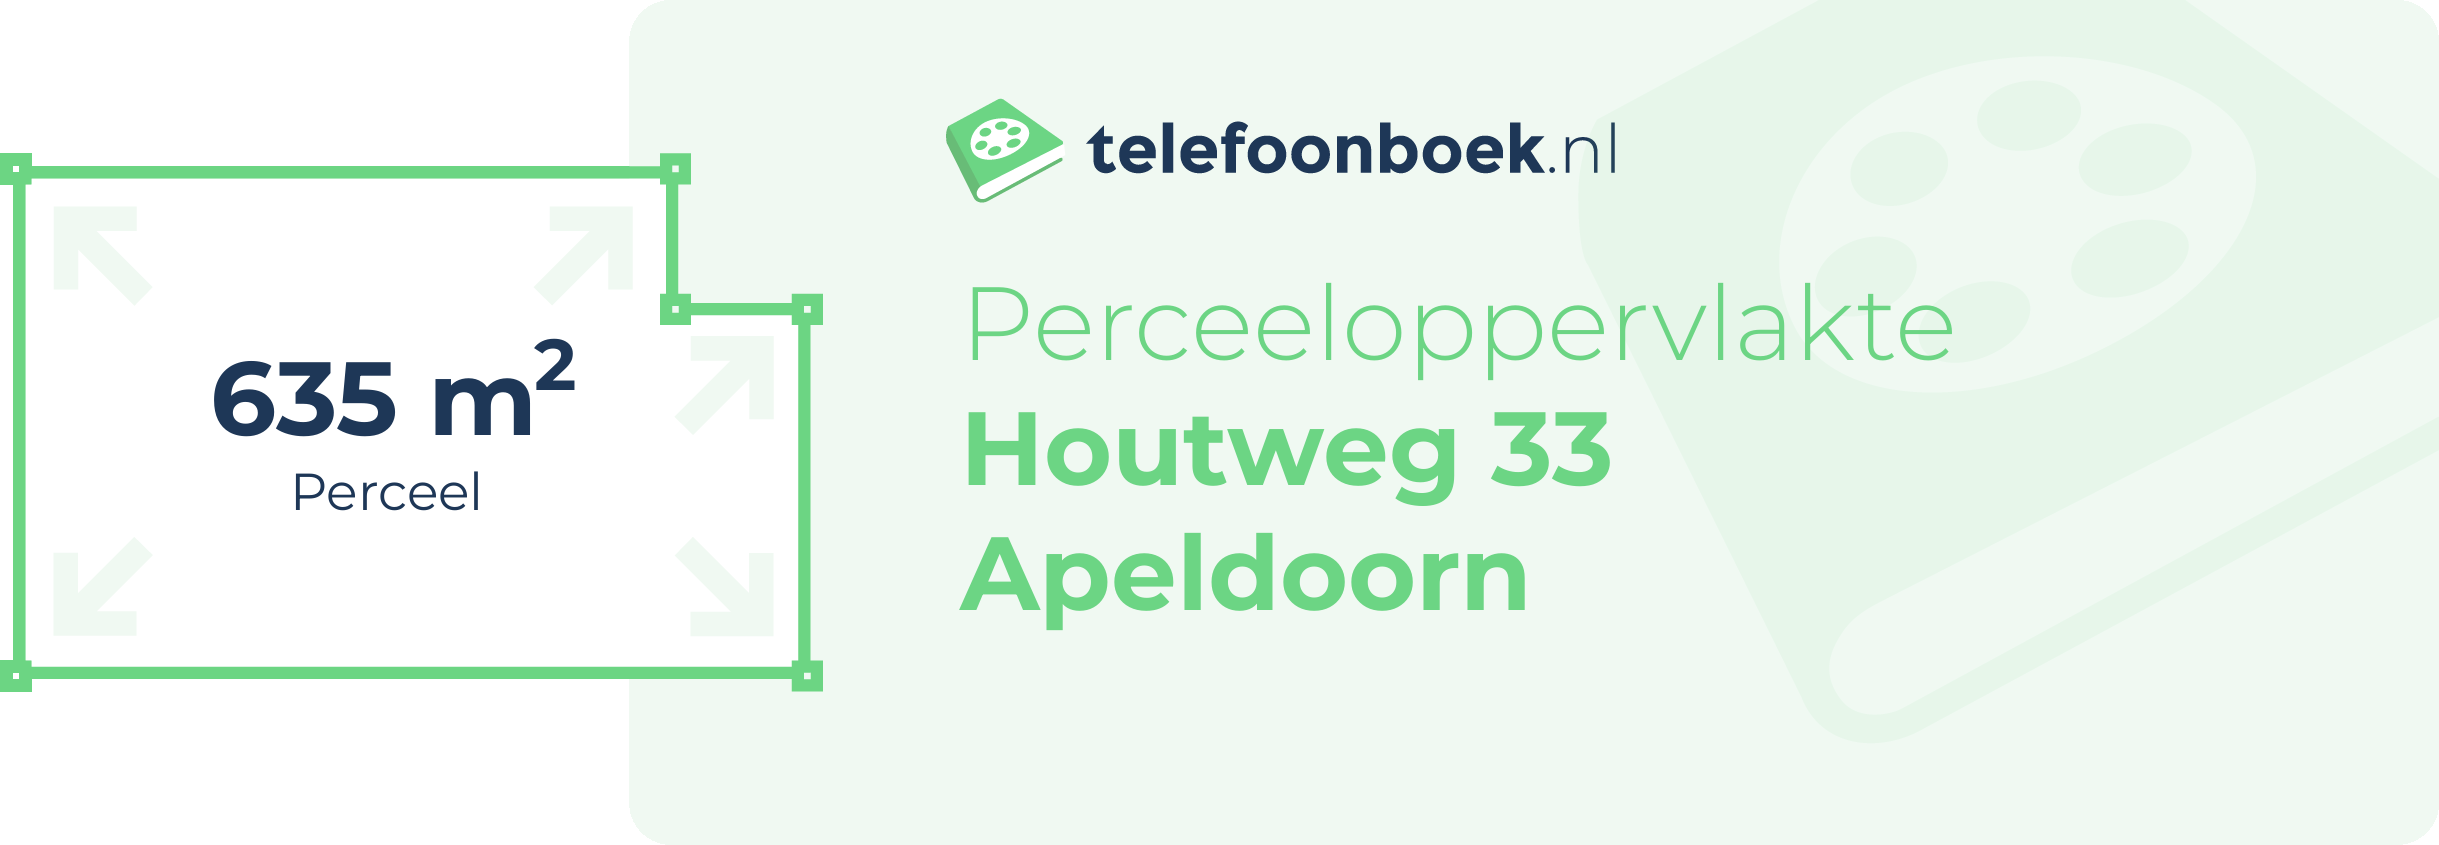 Perceeloppervlakte Houtweg 33 Apeldoorn